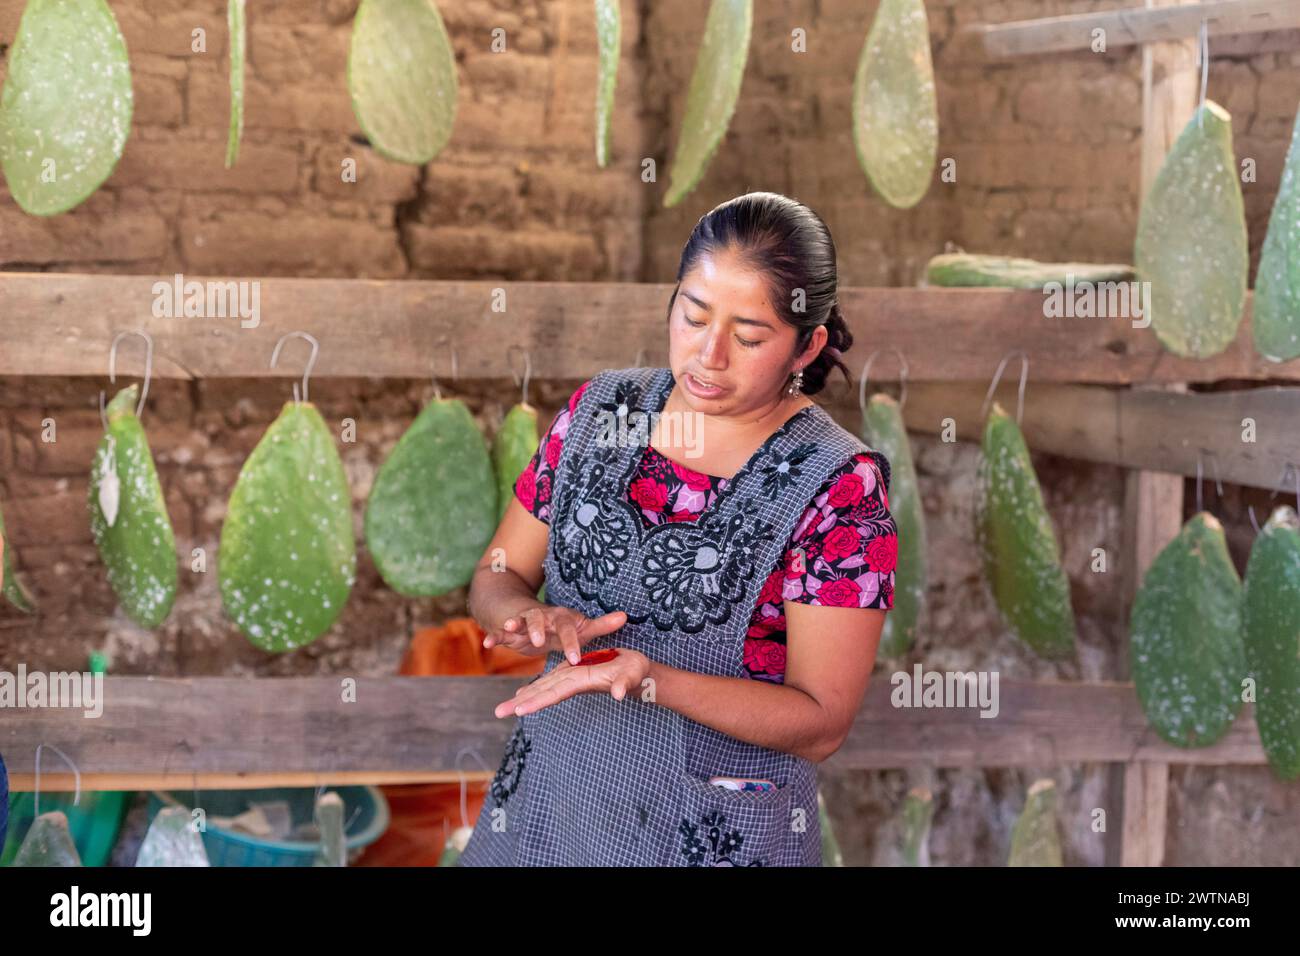 Teotitlán del Valle, Oaxaca, México - Las mujeres rurales del Valle de Tlacolula en Oaxaca se benefician de un programa de préstamos microfinancieros administrado por la organización sin fines de lucro En V. Foto de stock